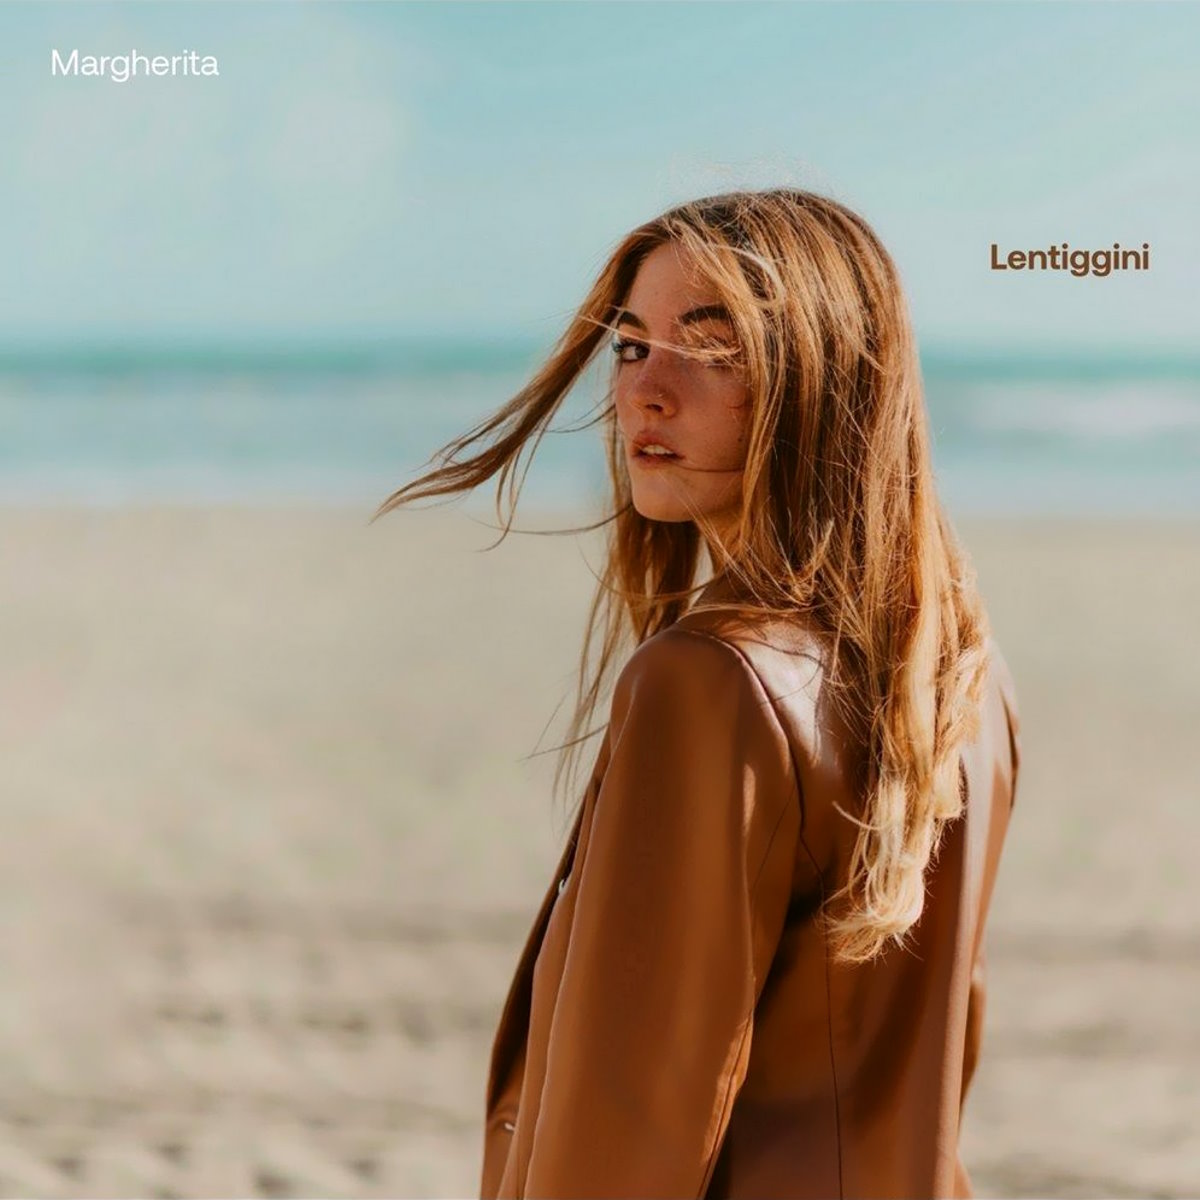 Margherita in radio con Lentiggini